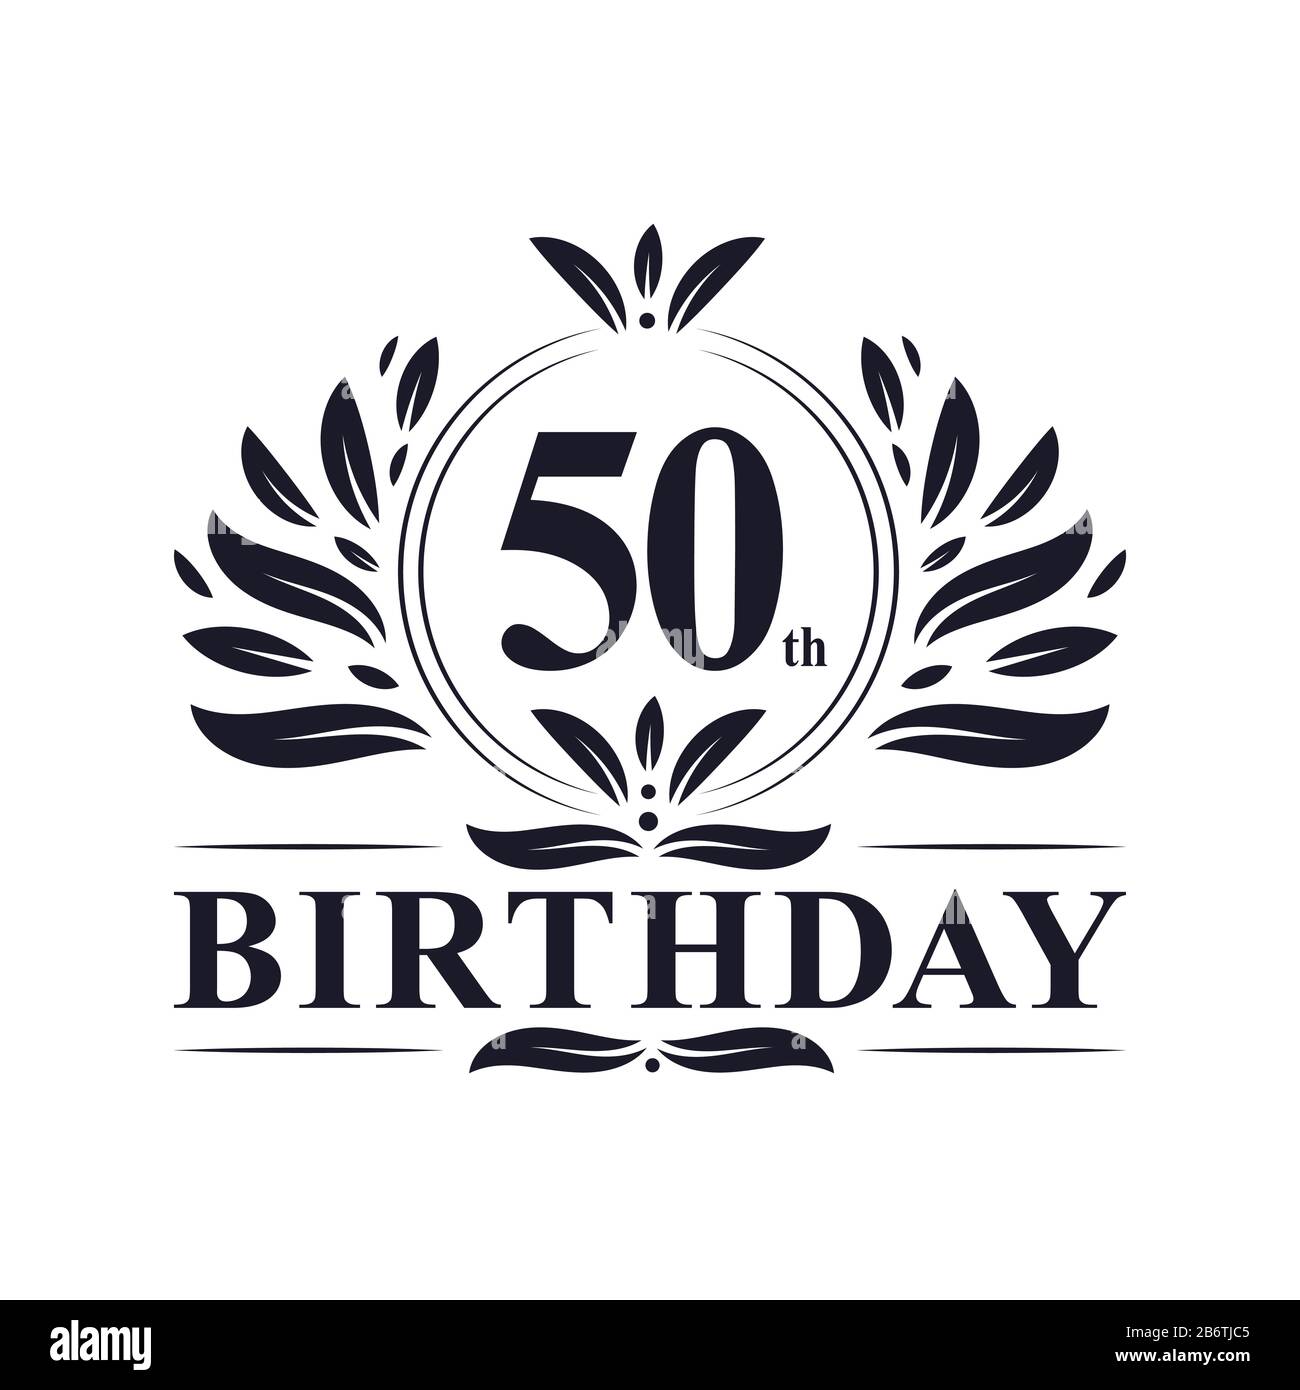 Logotipo De Cumpleaños De 50 Años Celebración De Lujo Con Diseño De 50